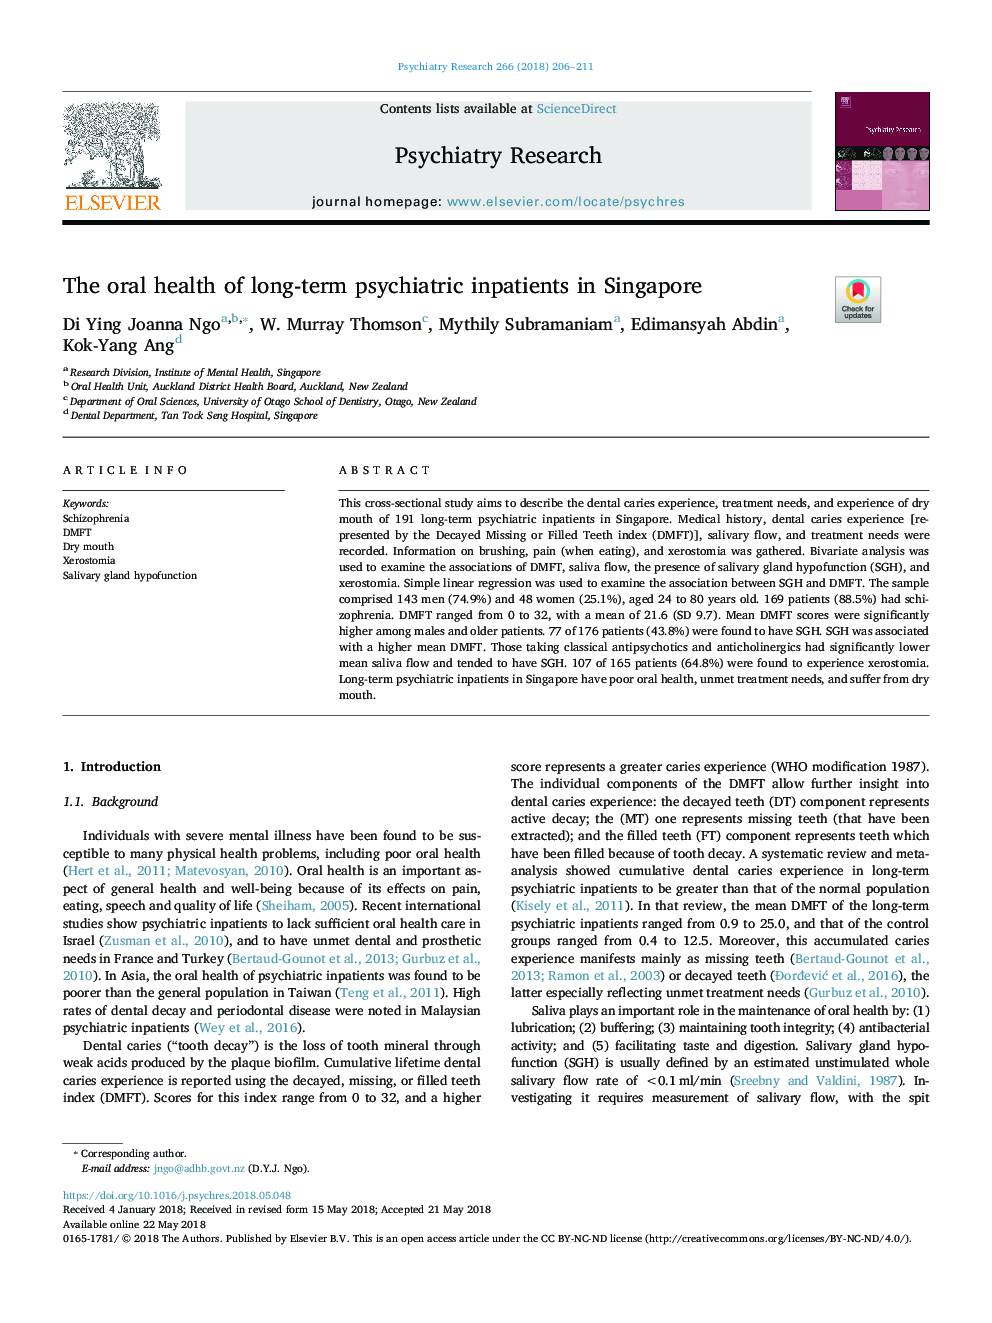 بهداشت دهان و دندان در بیمارستان های طولانی مدت روانپزشکی در سنگاپور 